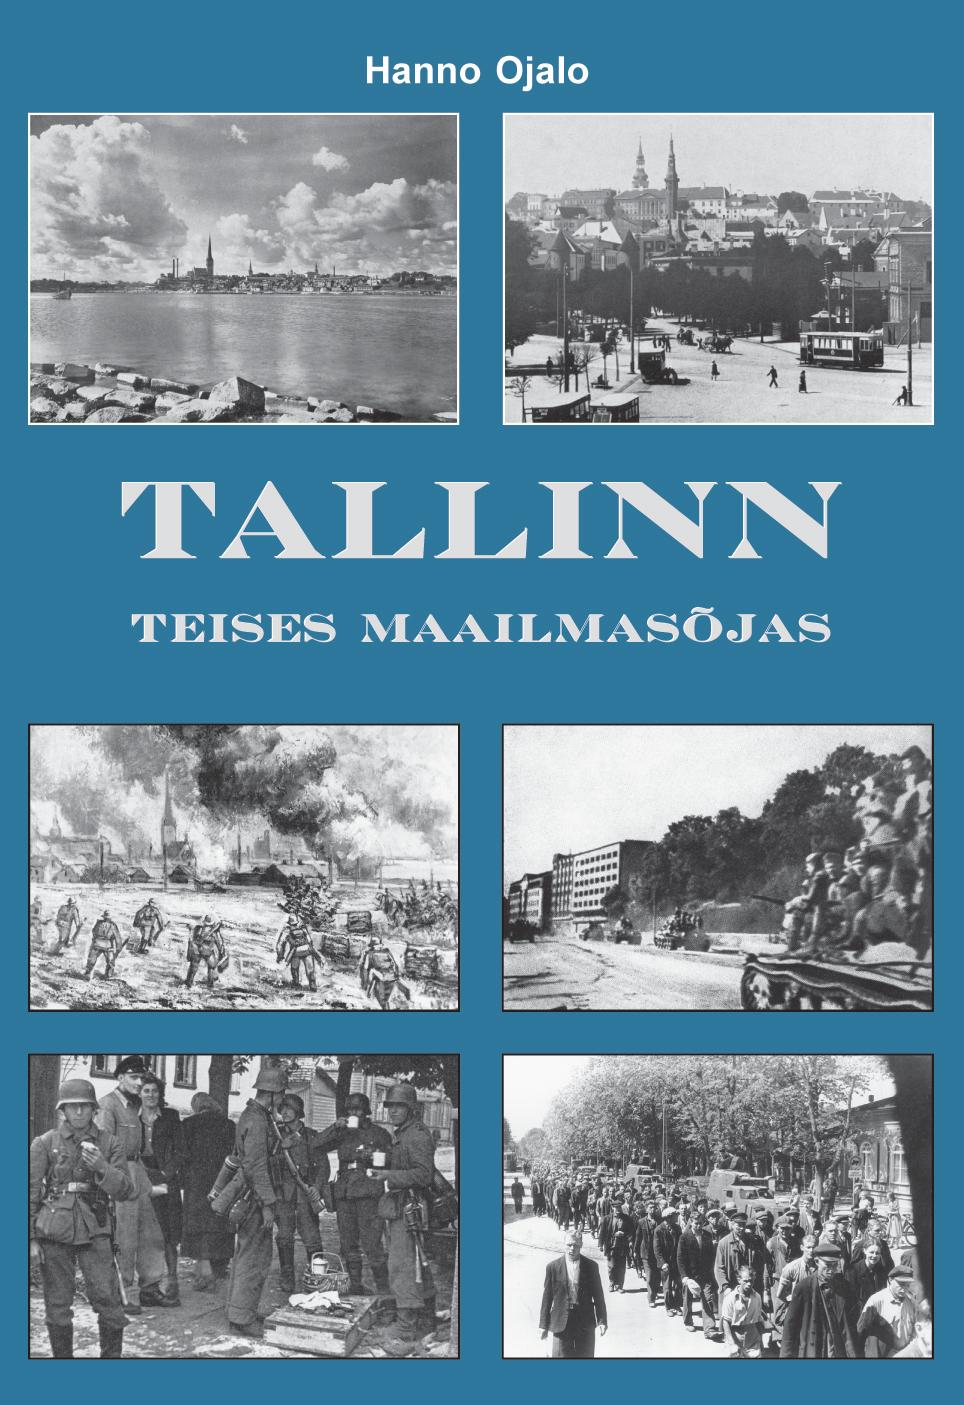 TALLINN TEISES MAAILMASÕJAS 1939-1945